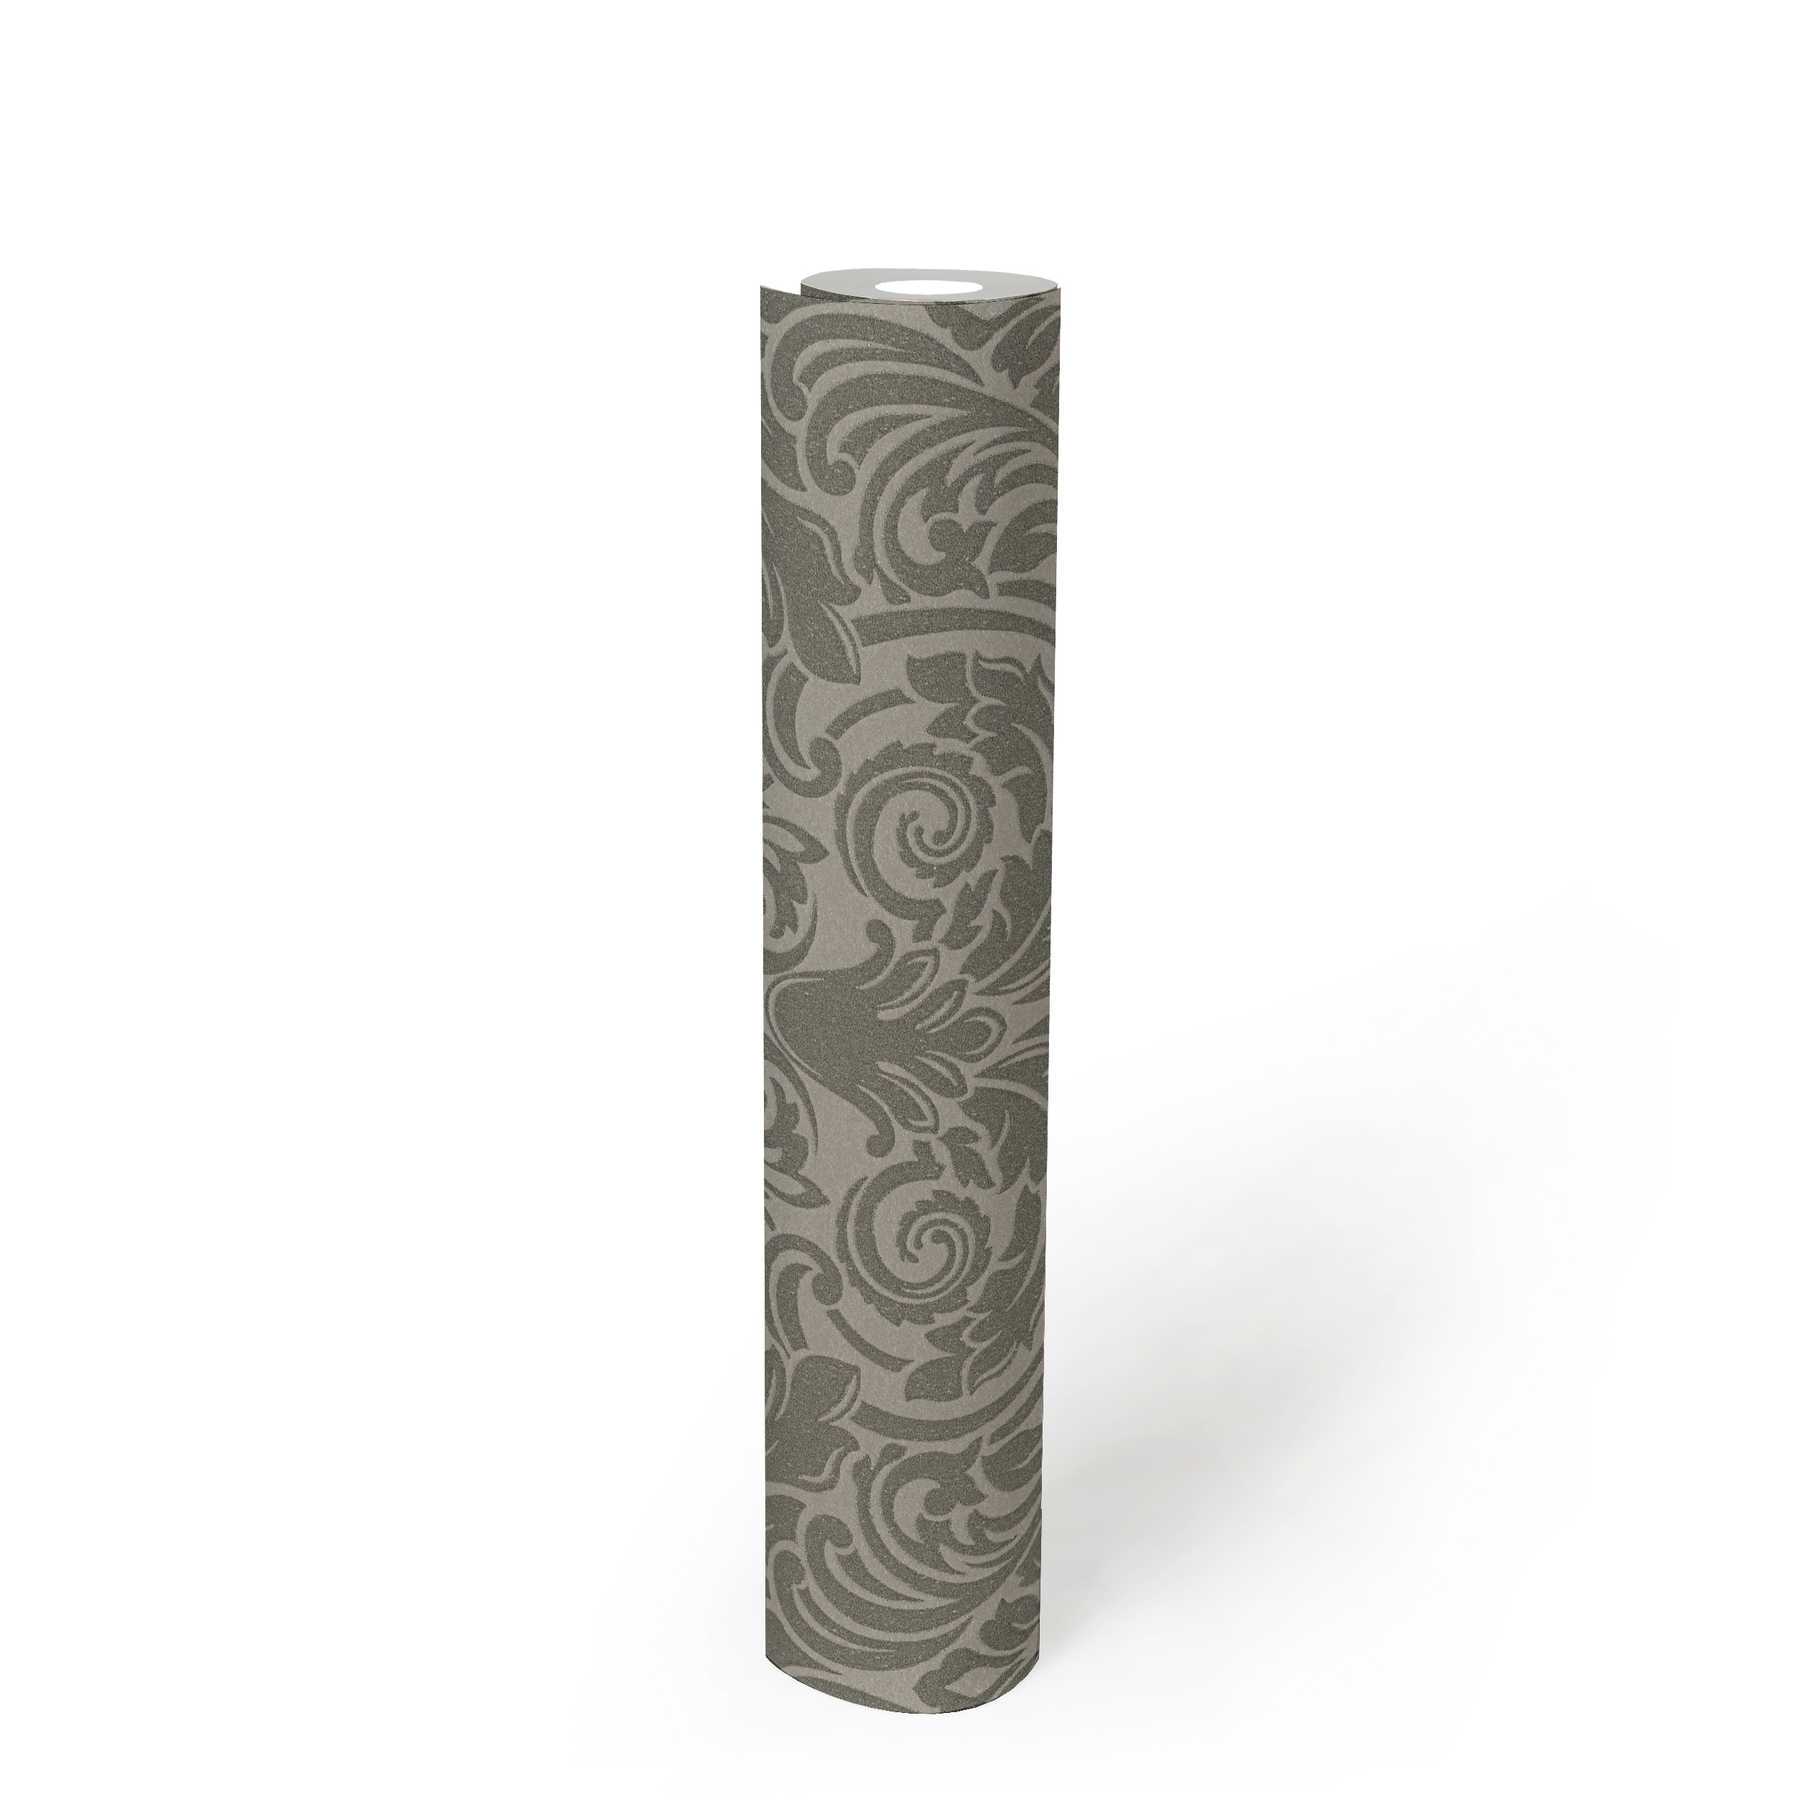             Carta da parati ornamentale effetto metallizzato e disegno floreale - argento, grigio
        